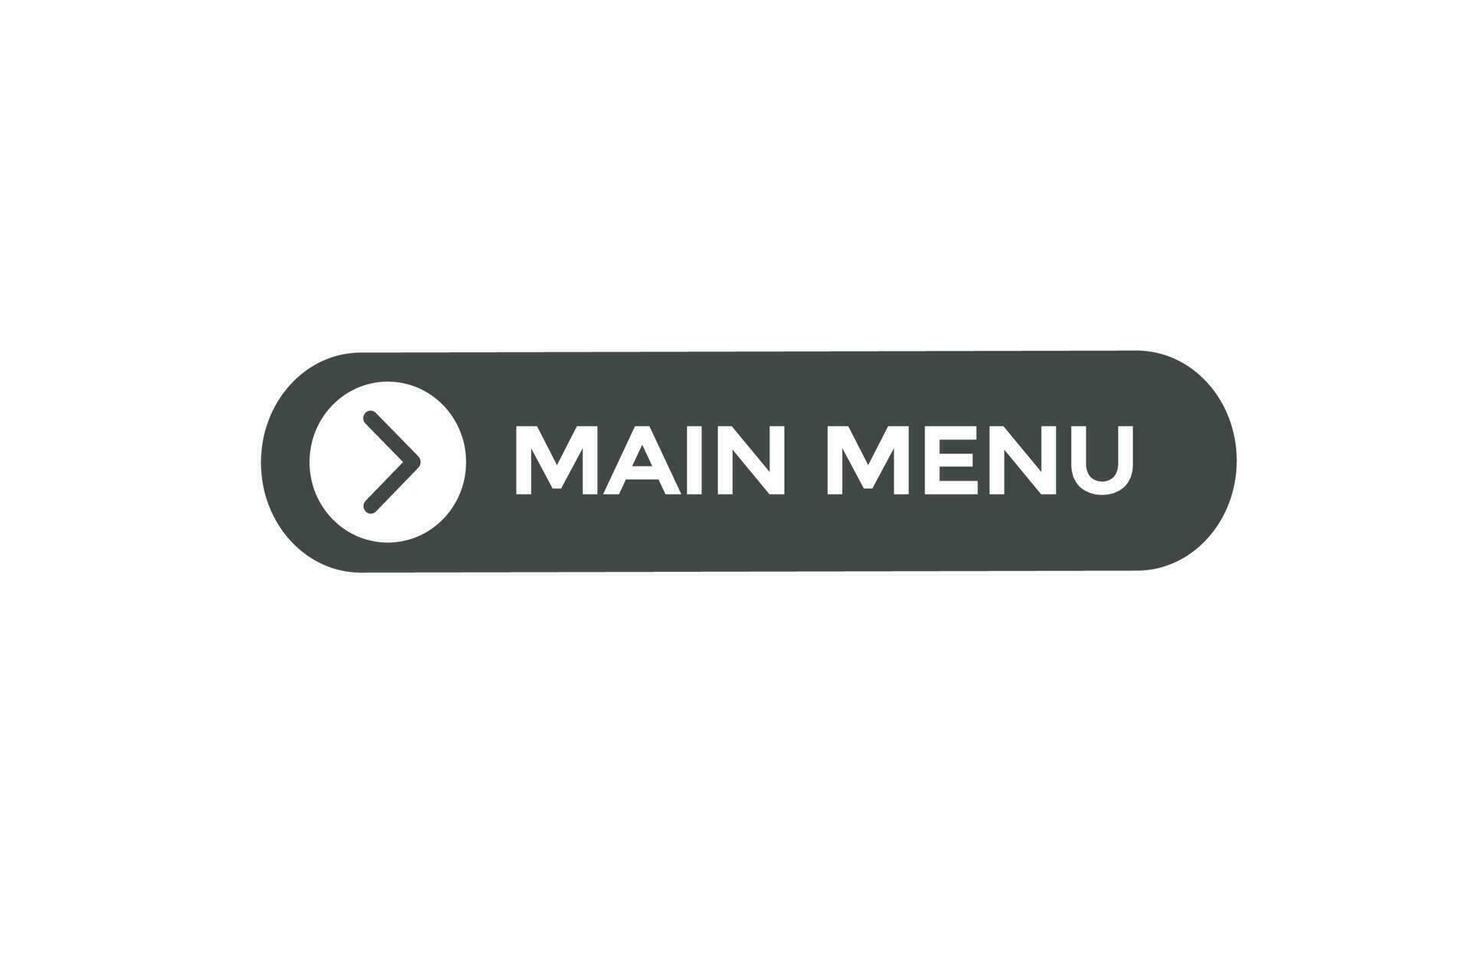 principale menu vecteurs.sign étiquette bulle discours principale menu vecteur